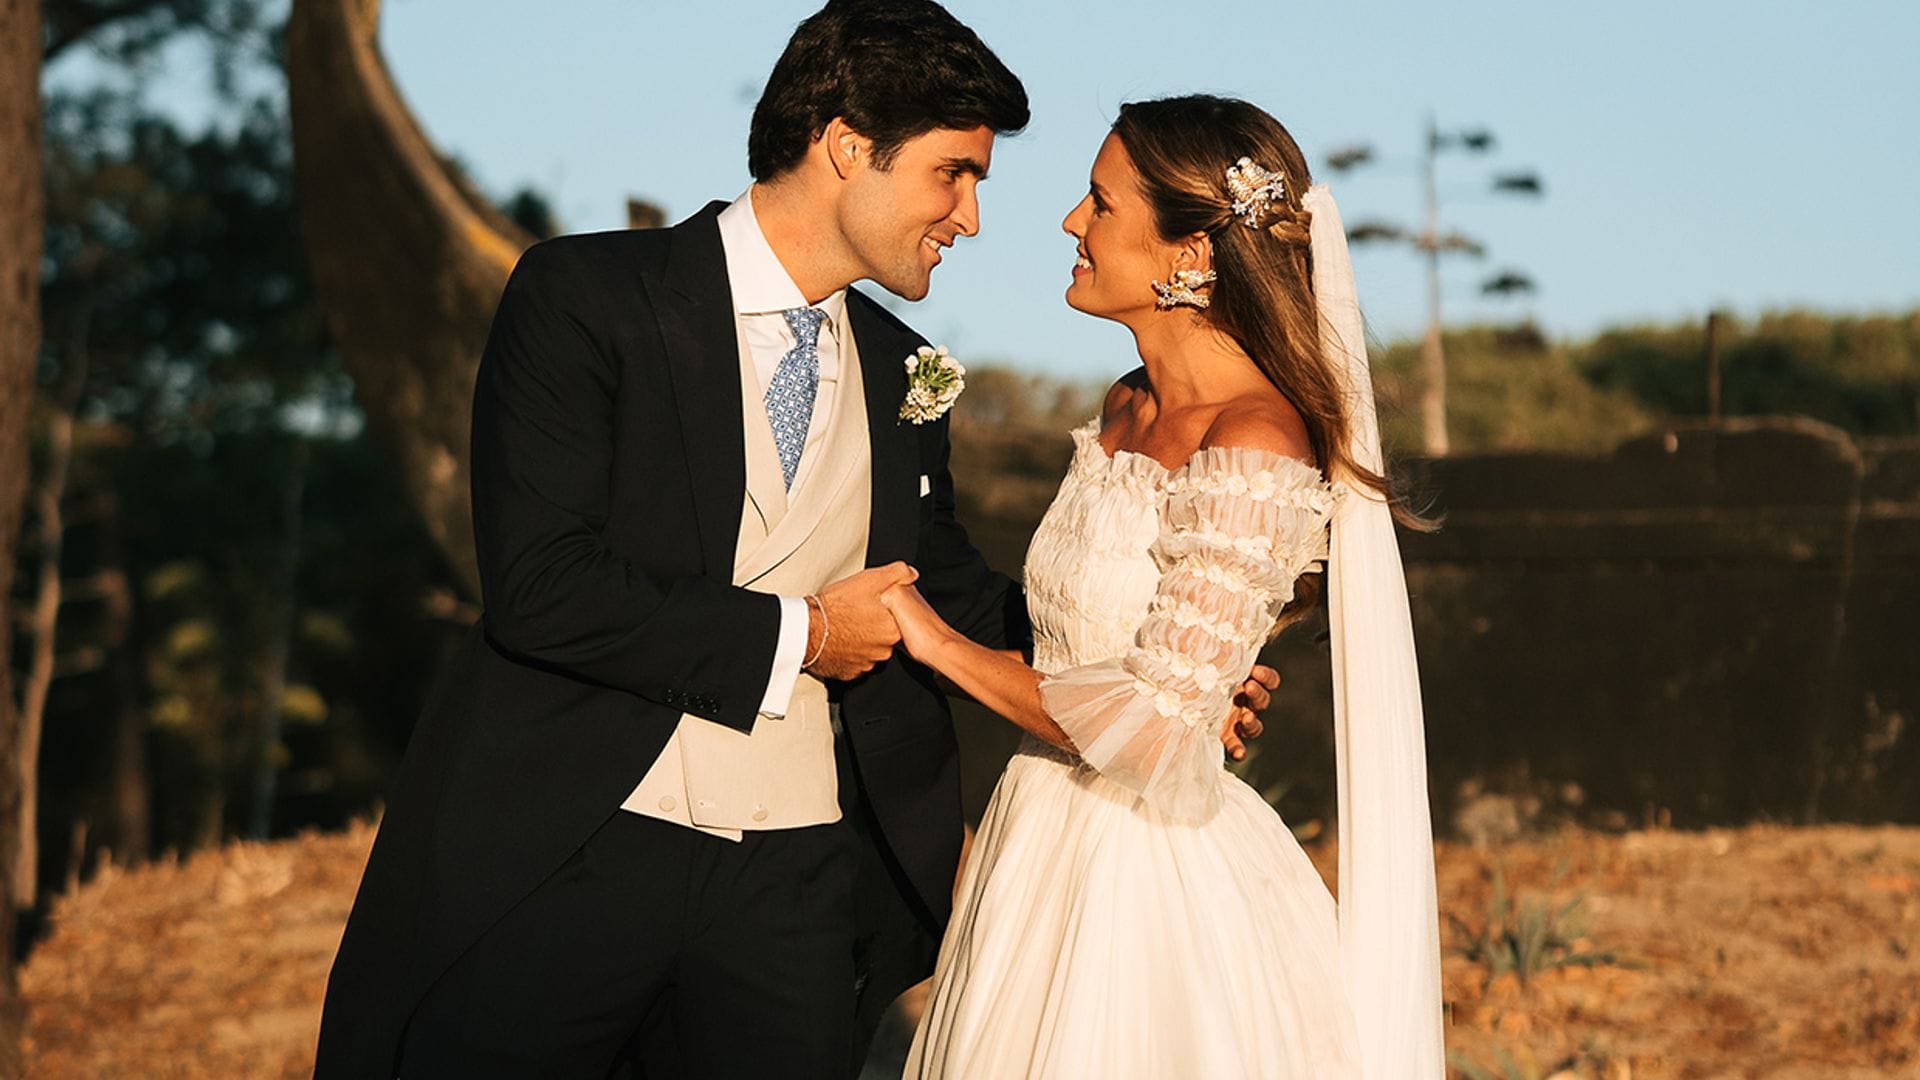 La boda viral de Rita, la novia portuguesa del vestido romántico y las joyas especiales